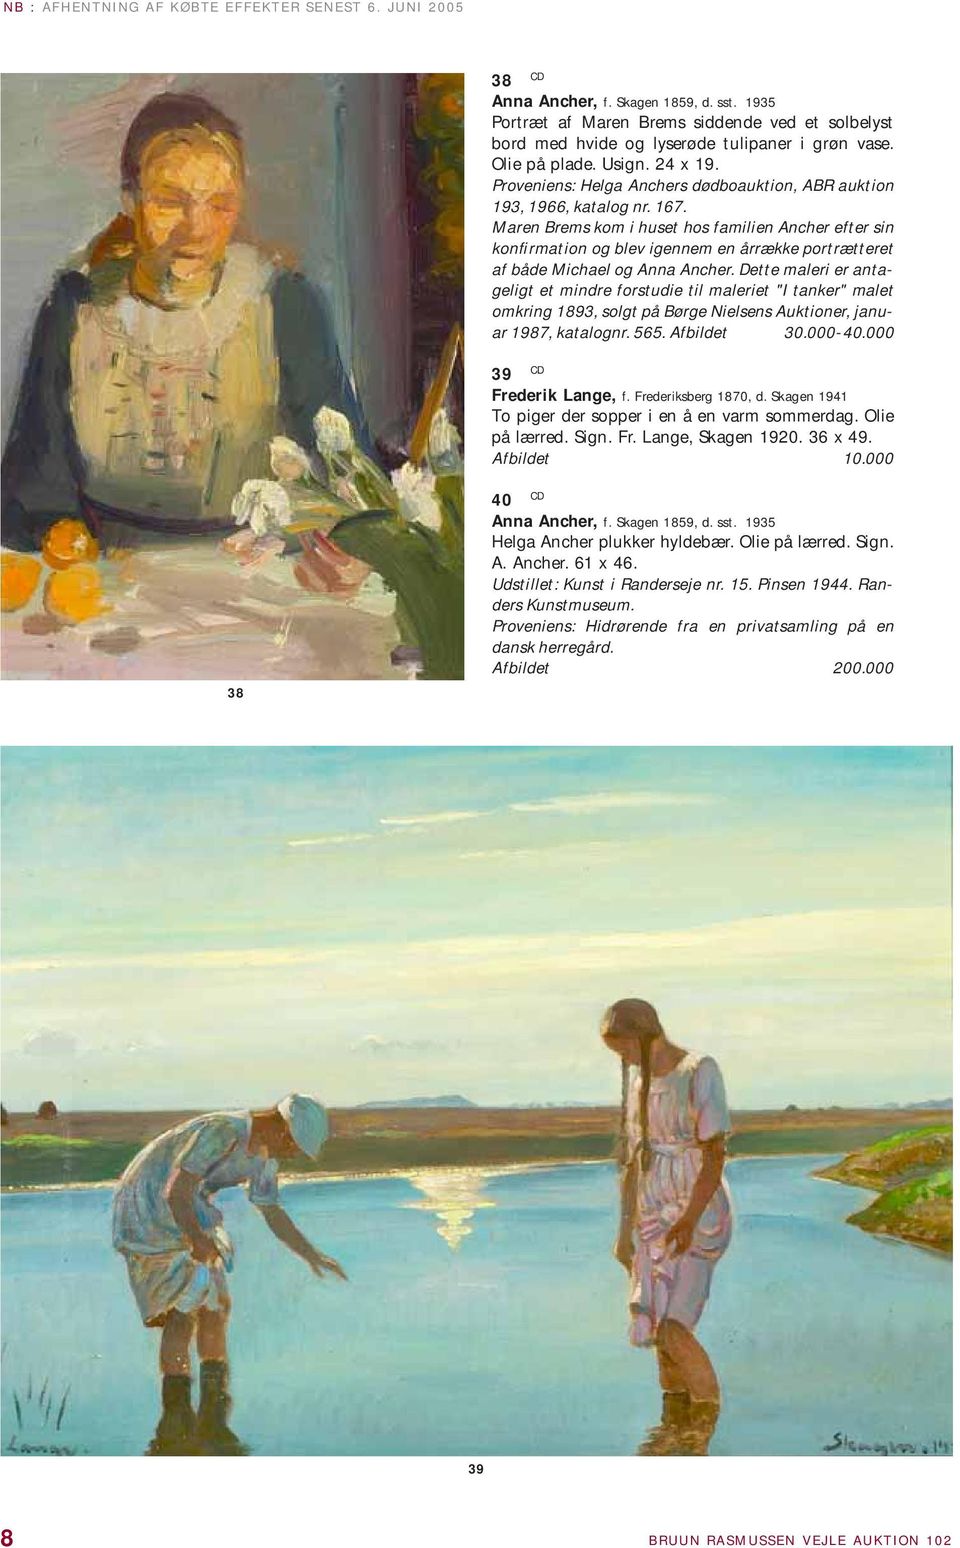 Maren Brems kom i huset hos familien Ancher efter sin konfirmation og blev igennem en årrække portrætteret af både Michael og Anna Ancher.